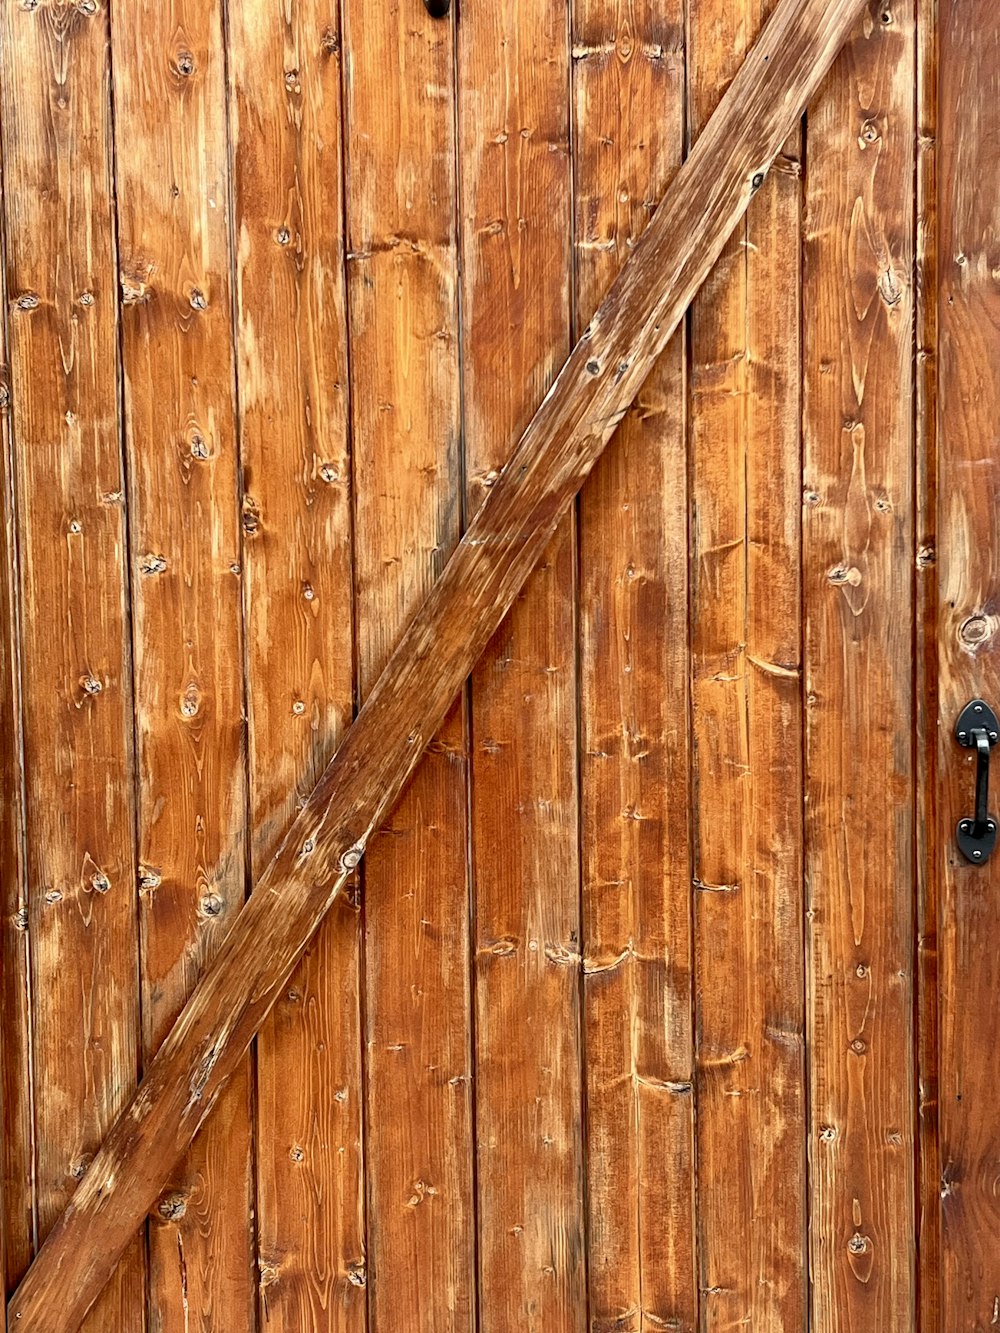 a wood door with a metal handle